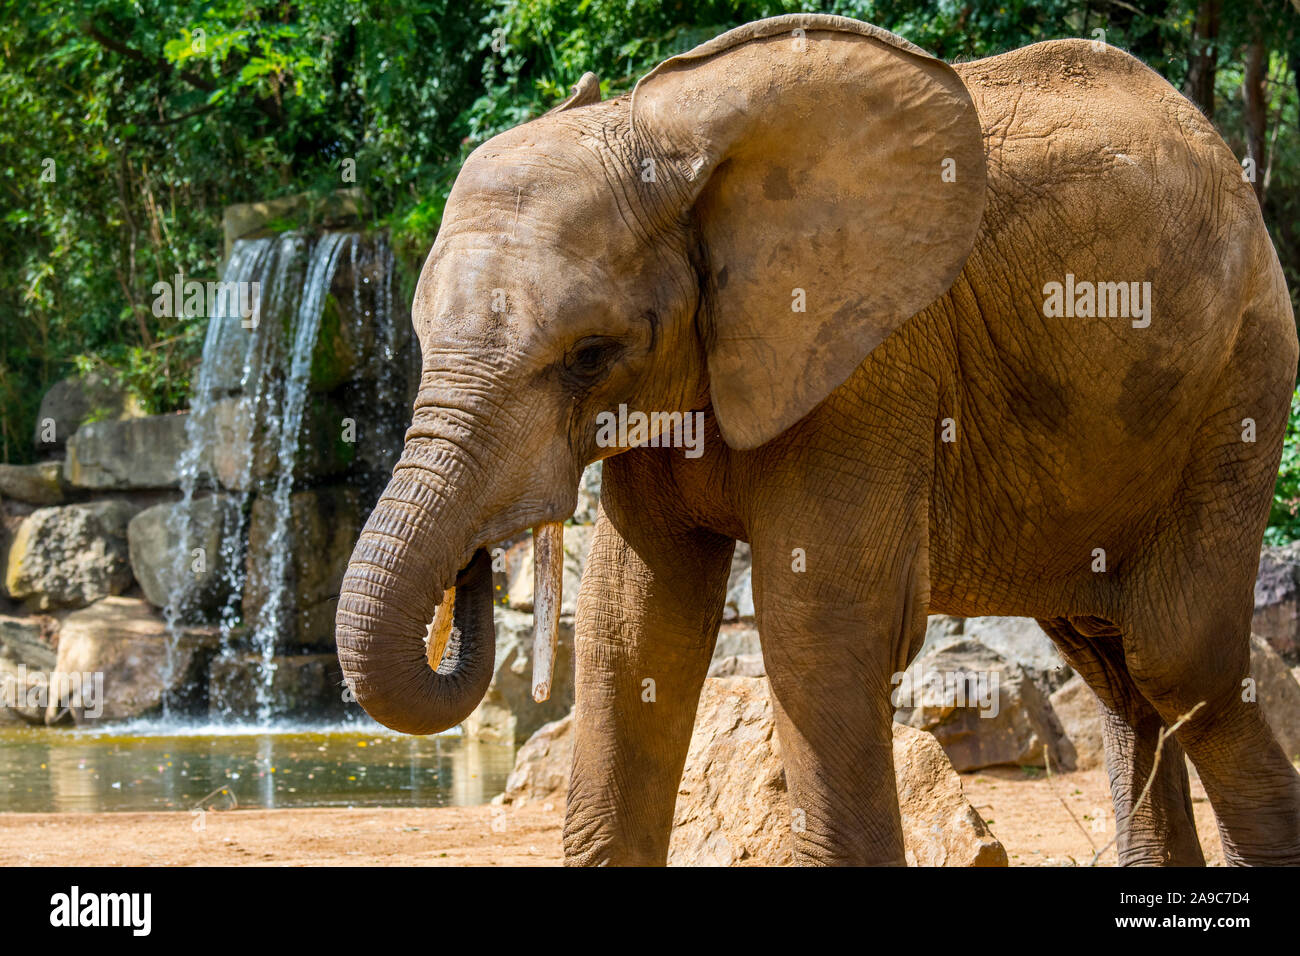 Elefante africano (Loxodonta) en el Zoo de la Flèche, parque zoológico en Pays de la Loire, Francia Foto de stock